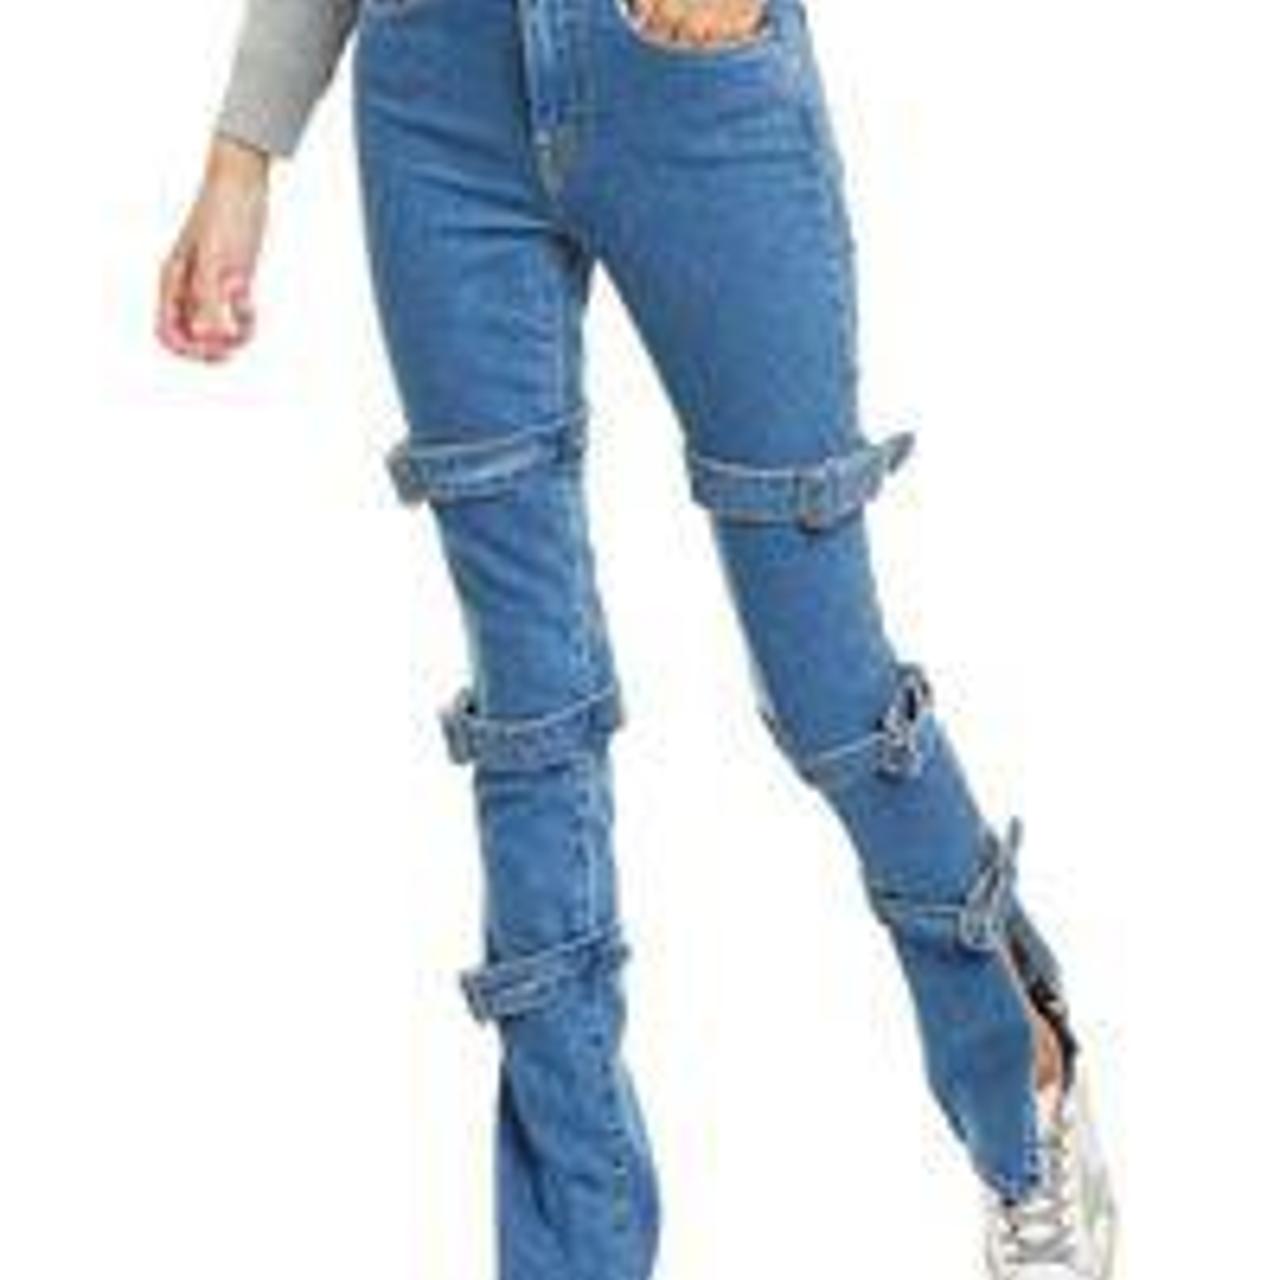 Product Image 1 - Cotton citizen strap denim jeans